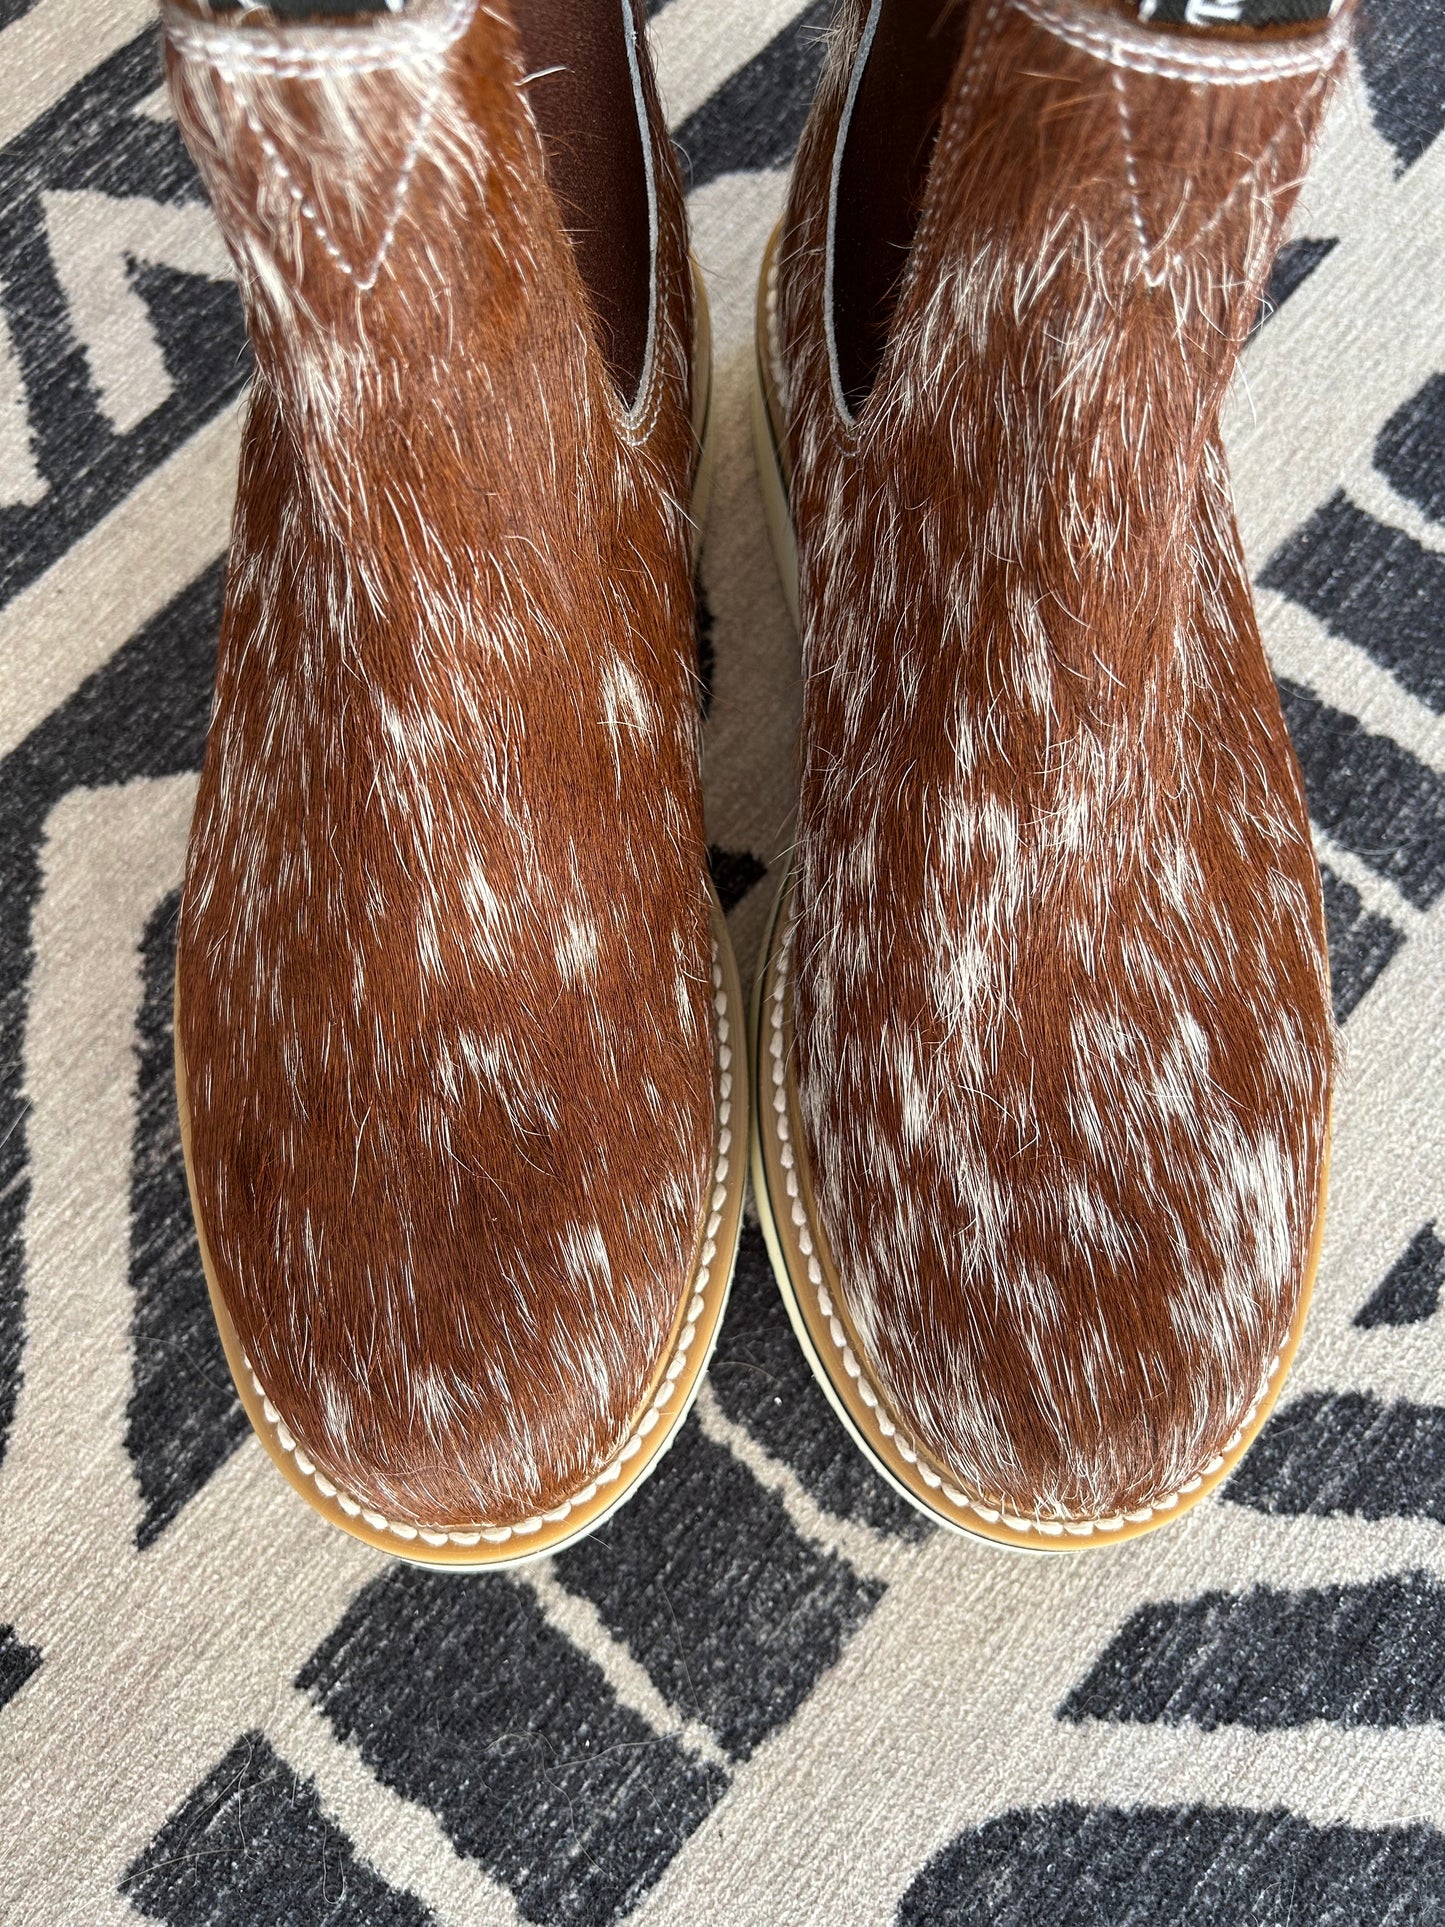 Rancherr Boots Size 9.5